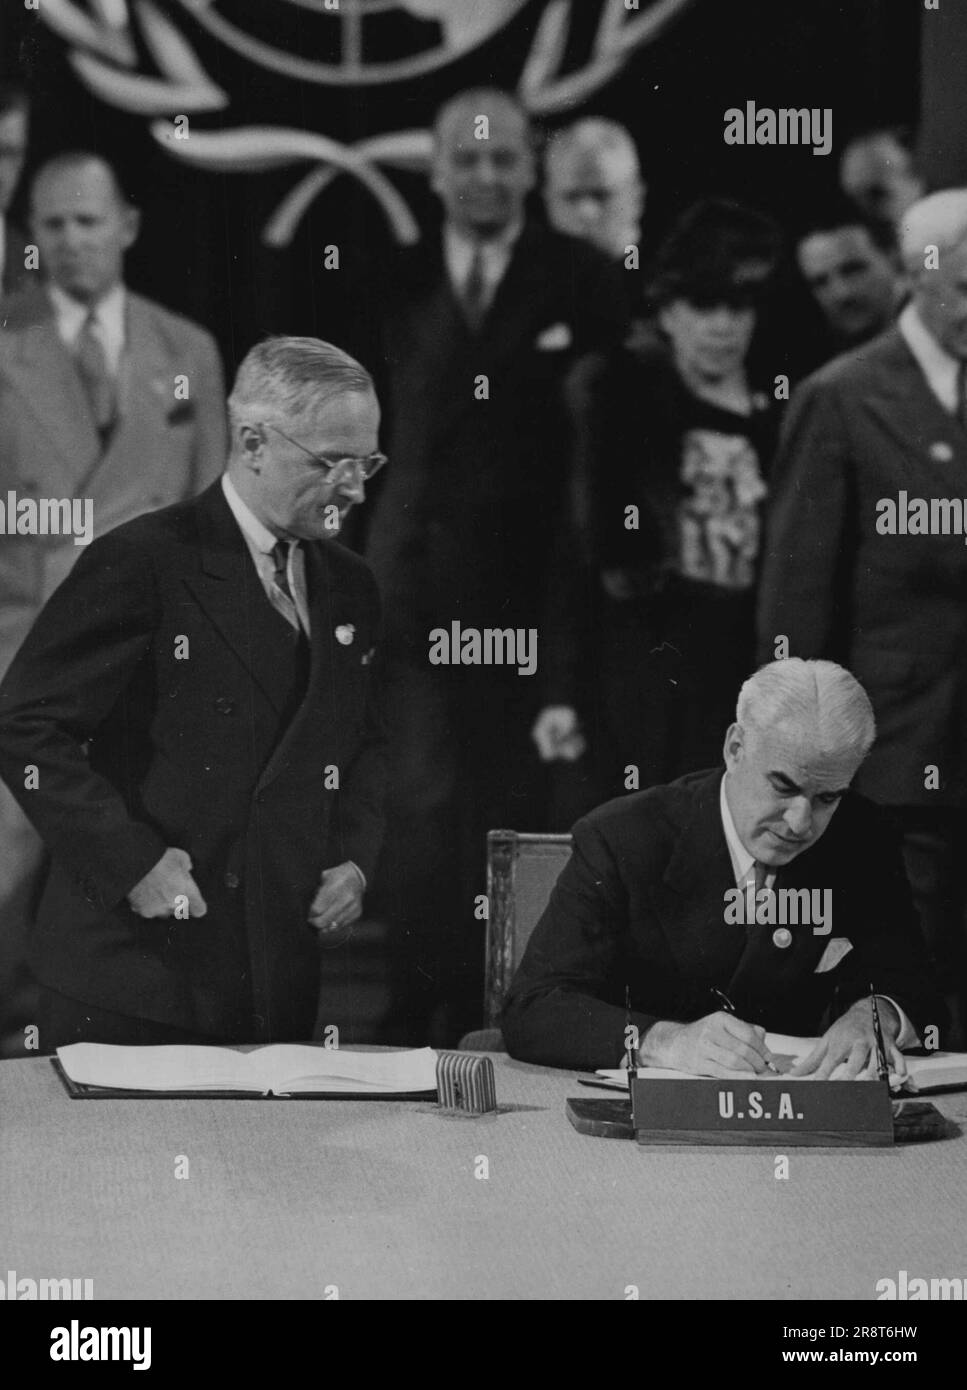 Truman Watches Stettinius segno per gli Stati Uniti -- come guarda il Presidente Truman, il Segretario di Stato Stettinius (seduto) firma il capitolo delle Nazioni Unite a San Francisco, giugno 26. Le persone in background non sono identificate. Giugno 26, 1945. (Foto per foto stampa associata). Foto Stock